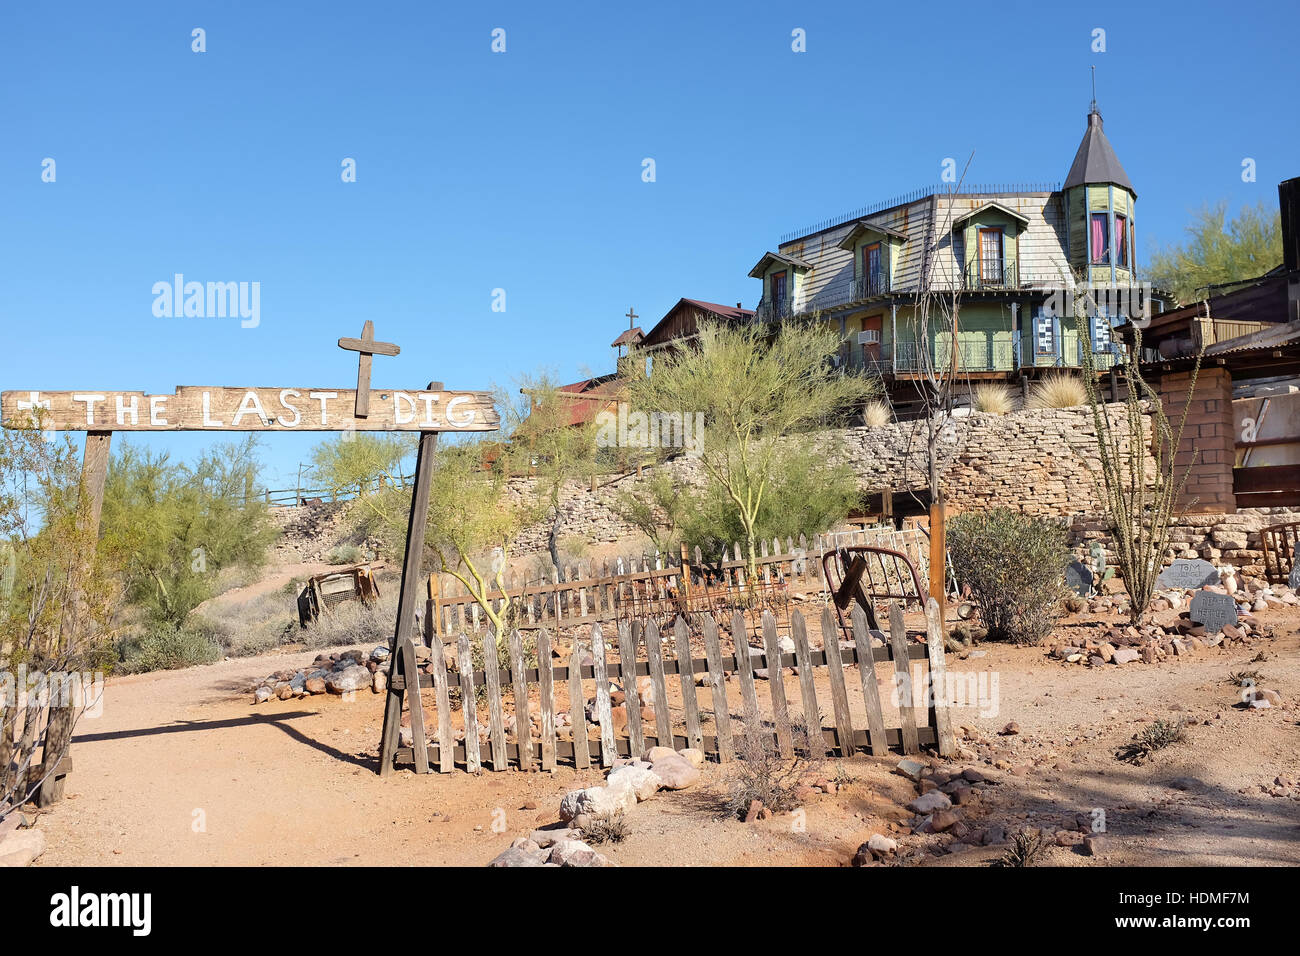 Boot Hill à la Goldfield Ghost Town, dans la région de Apache Junction, Arizona, au large de la Route 88. Regardant les Bordello et église sur la montagne. Banque D'Images